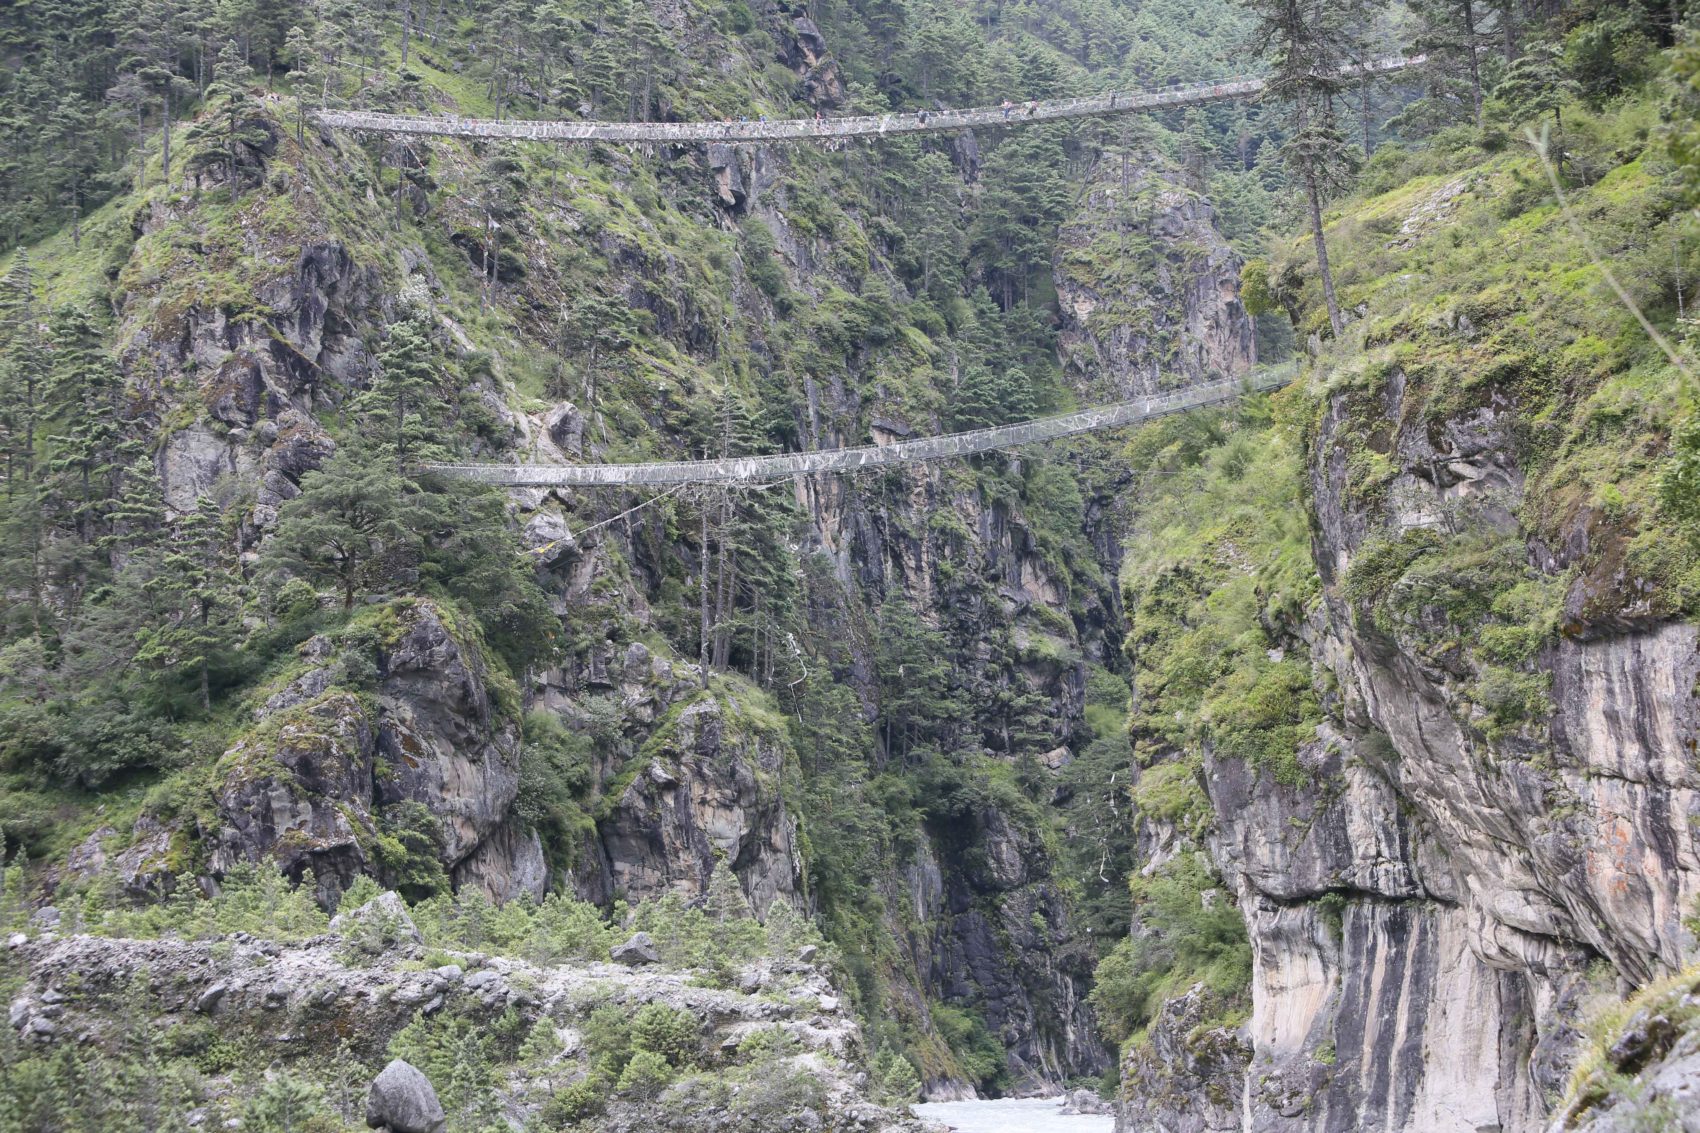 Le pont Lazrja est le plus haut de ceux que l'on passe sur le trek du Gokyo, ou du camp de base de l'Everest